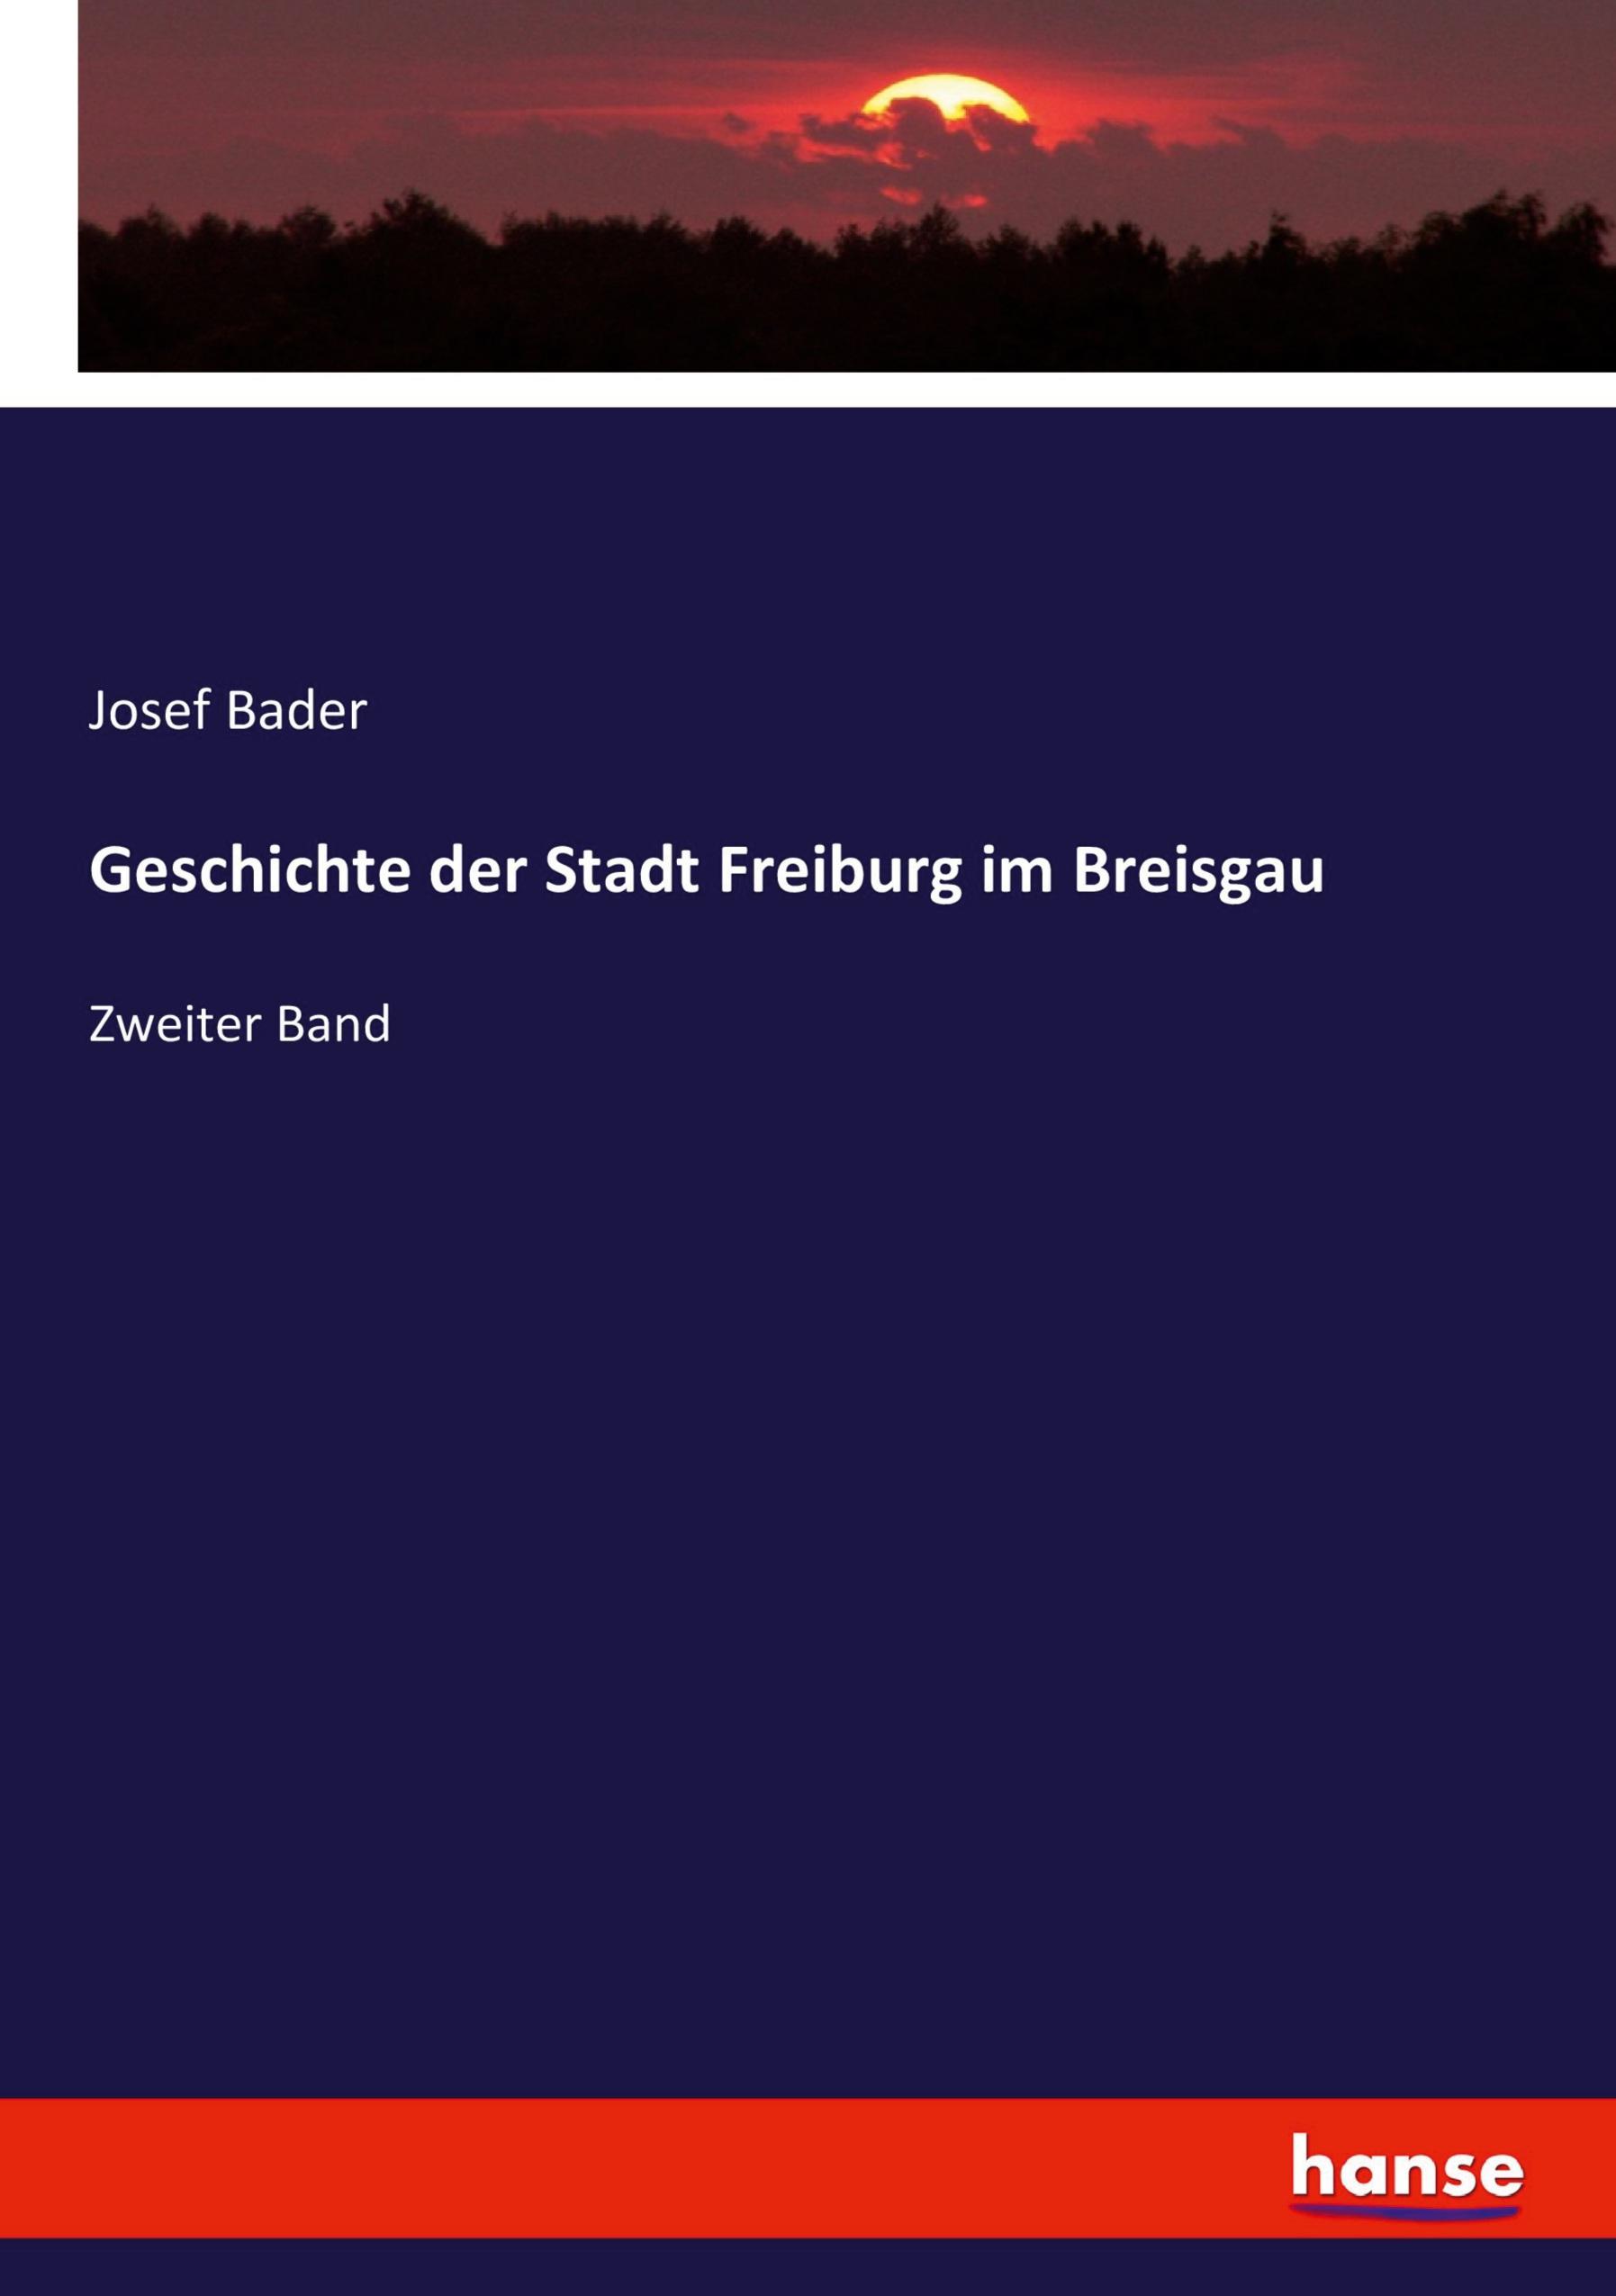 Geschichte der Stadt Freiburg im Breisgau | Zweiter Band | Josef Bader | Taschenbuch | Paperback | 400 S. | Deutsch | 2020 | hansebooks | EAN 9783743456259 - Bader, Josef